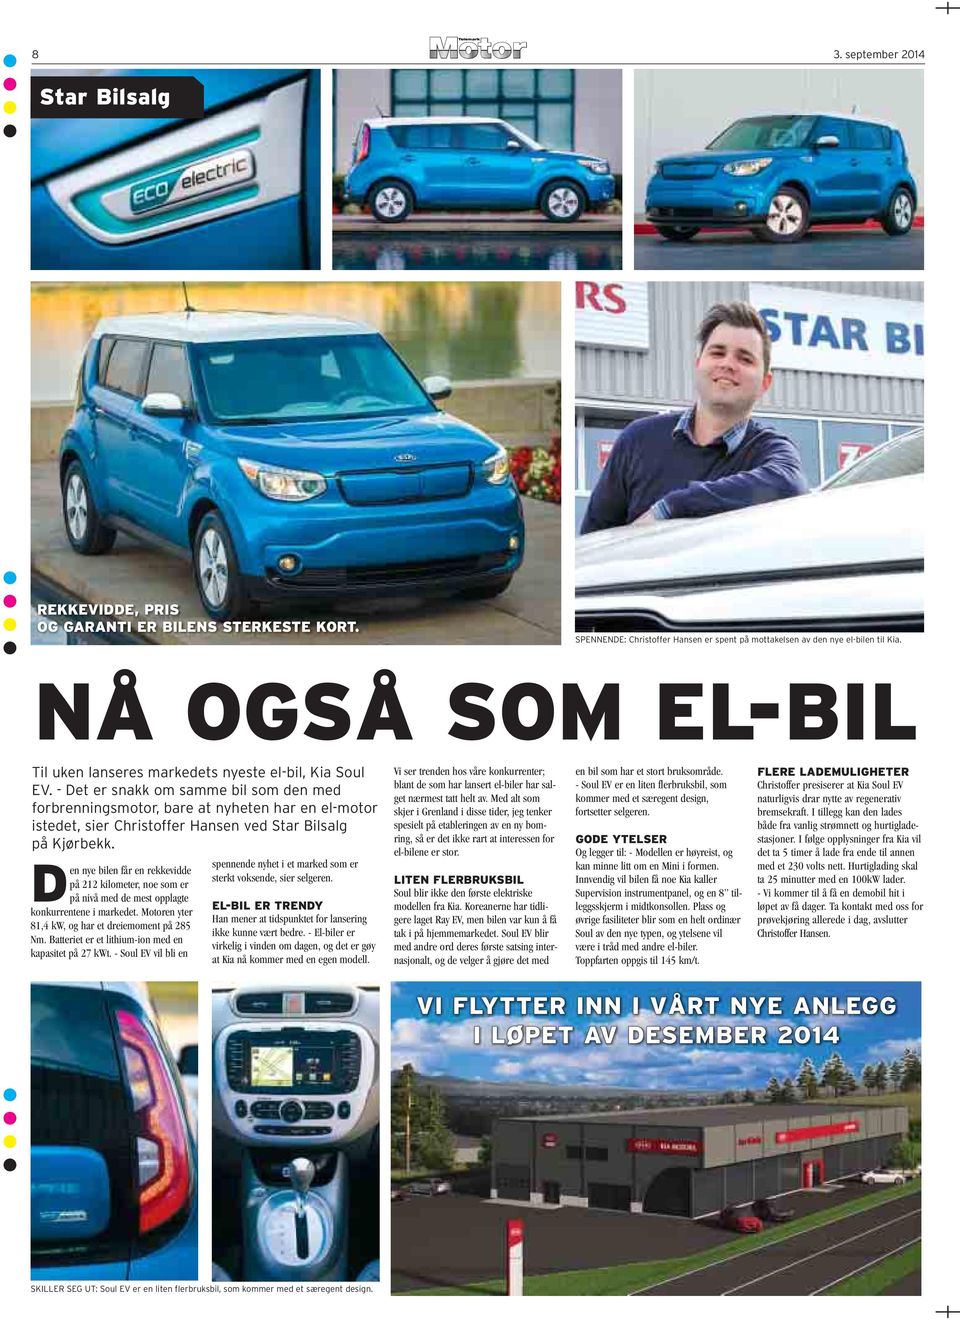 - Det er snakk om samme bil som den med forbrenningsmotor, bare at nyheten har en el-motor istedet, sier Christoffer Hansen ved Star Bilsalg på Kjørbekk.